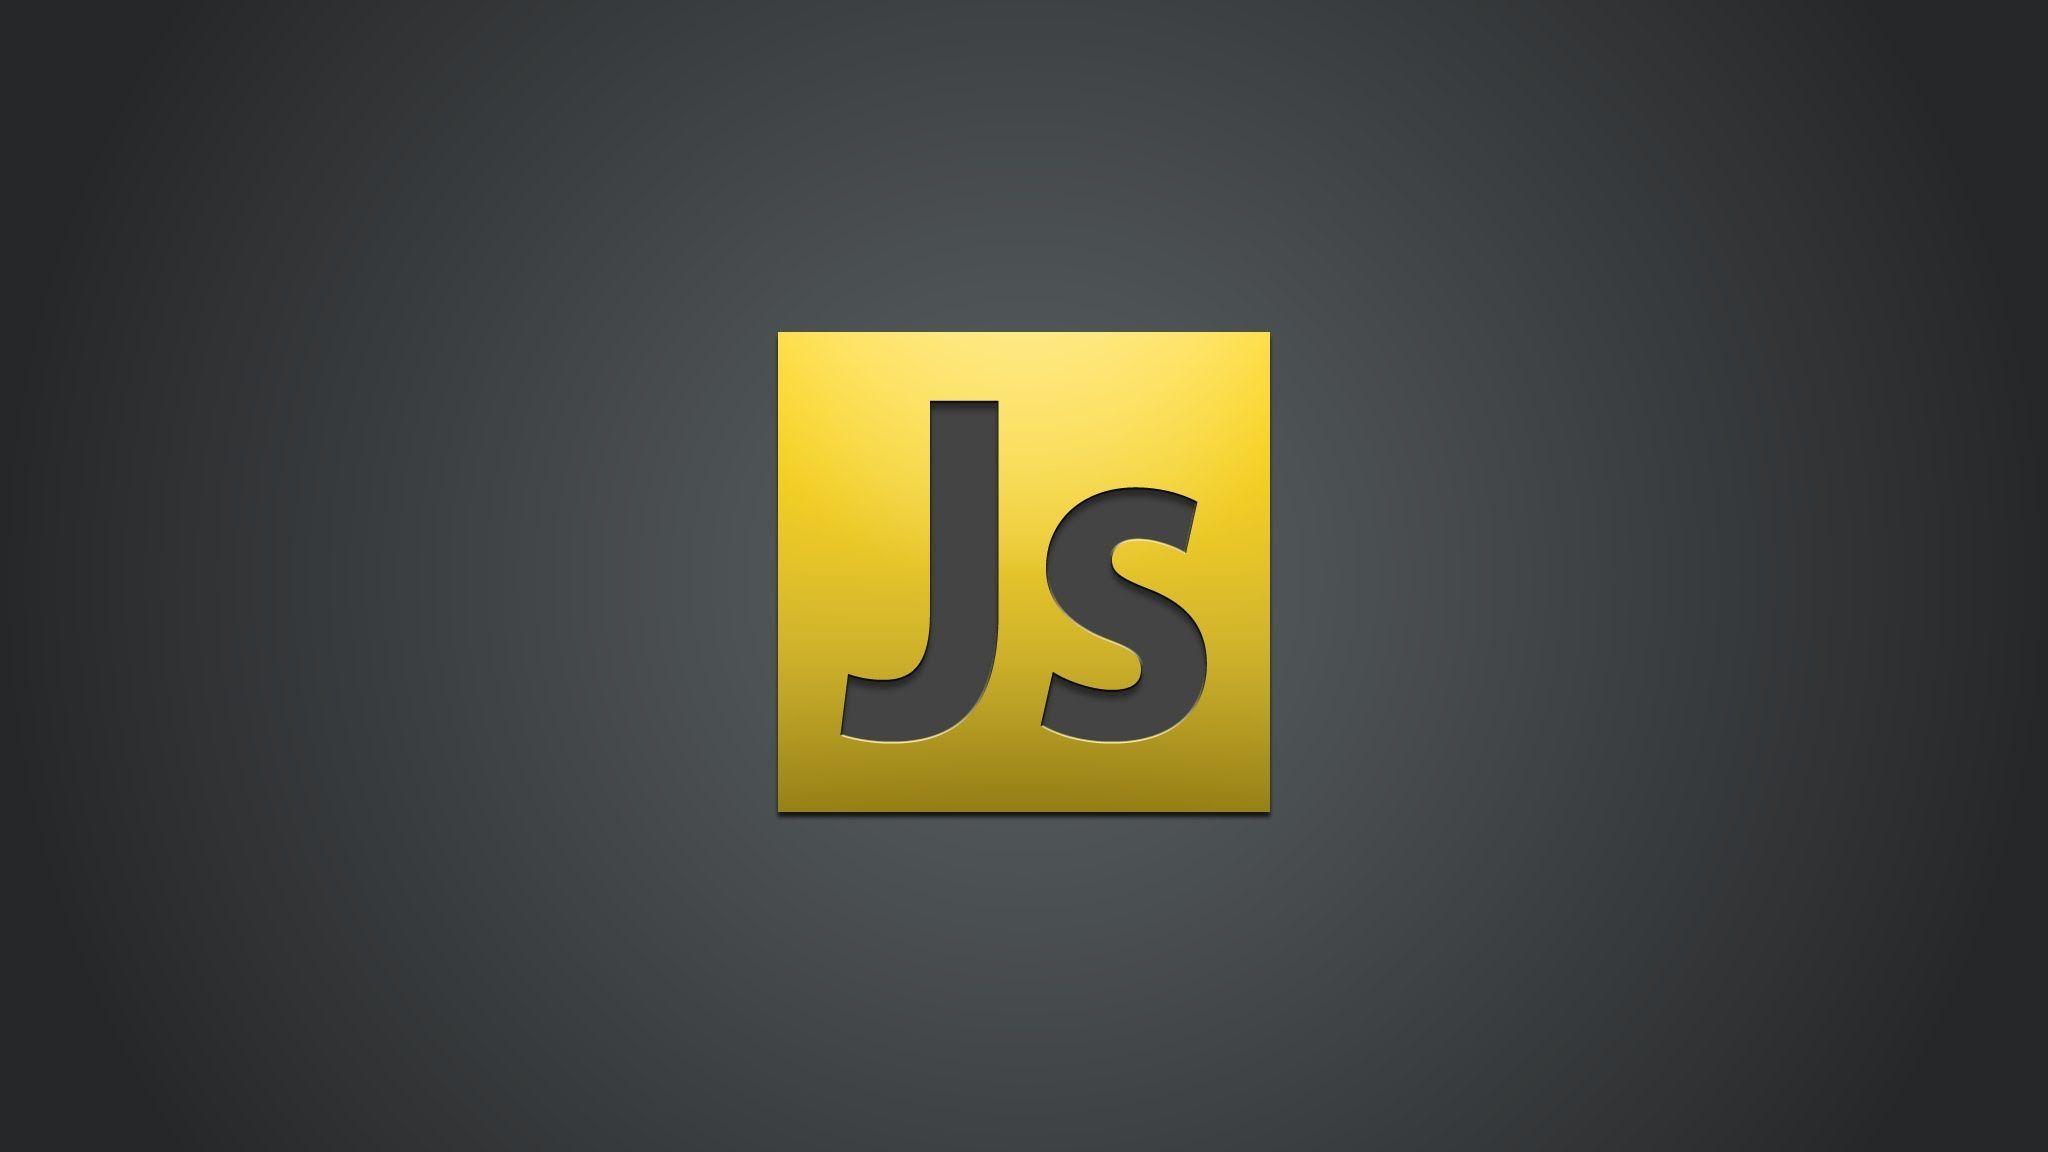 Curso básico de JavaScript - Acordeón Con JavaScript - Ejemplos y Ejercicios